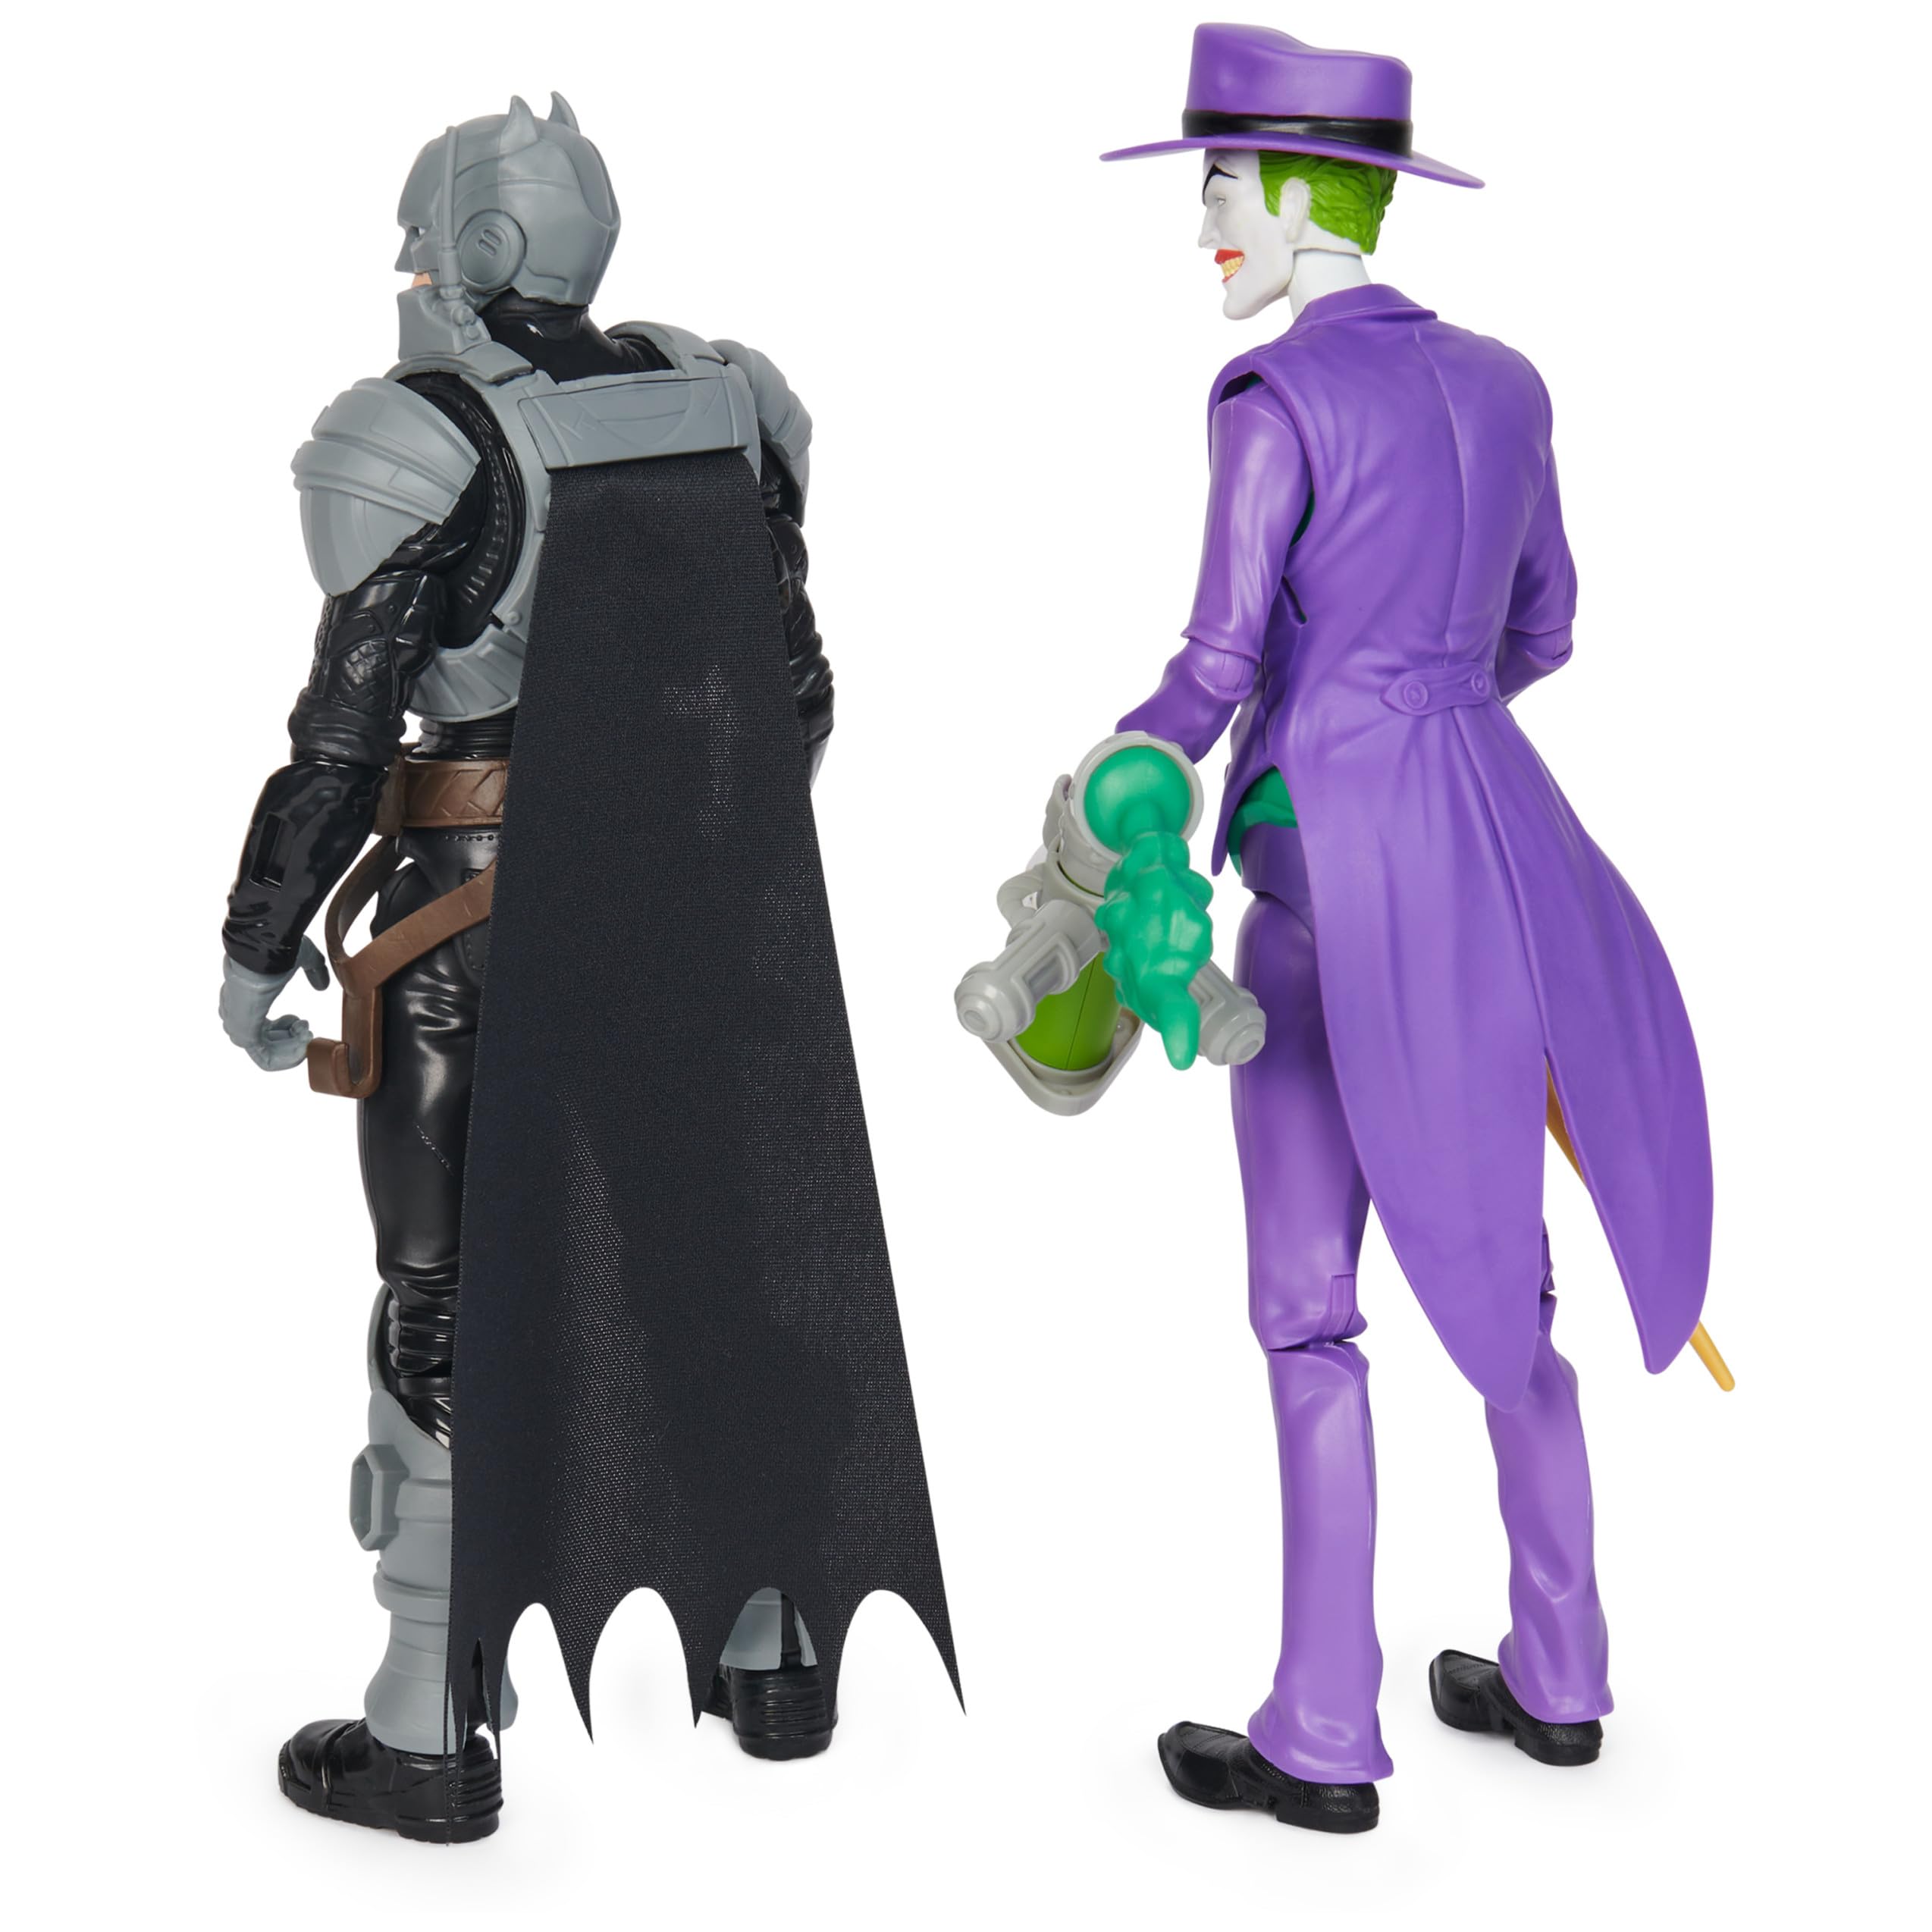 DC Comics, Batman Adventures, Batman vs The Joker Action Figures Set, 2 Figures, 12 Armor Accessories, 12-inch Super Hero Kids Toy for Boys & Girls